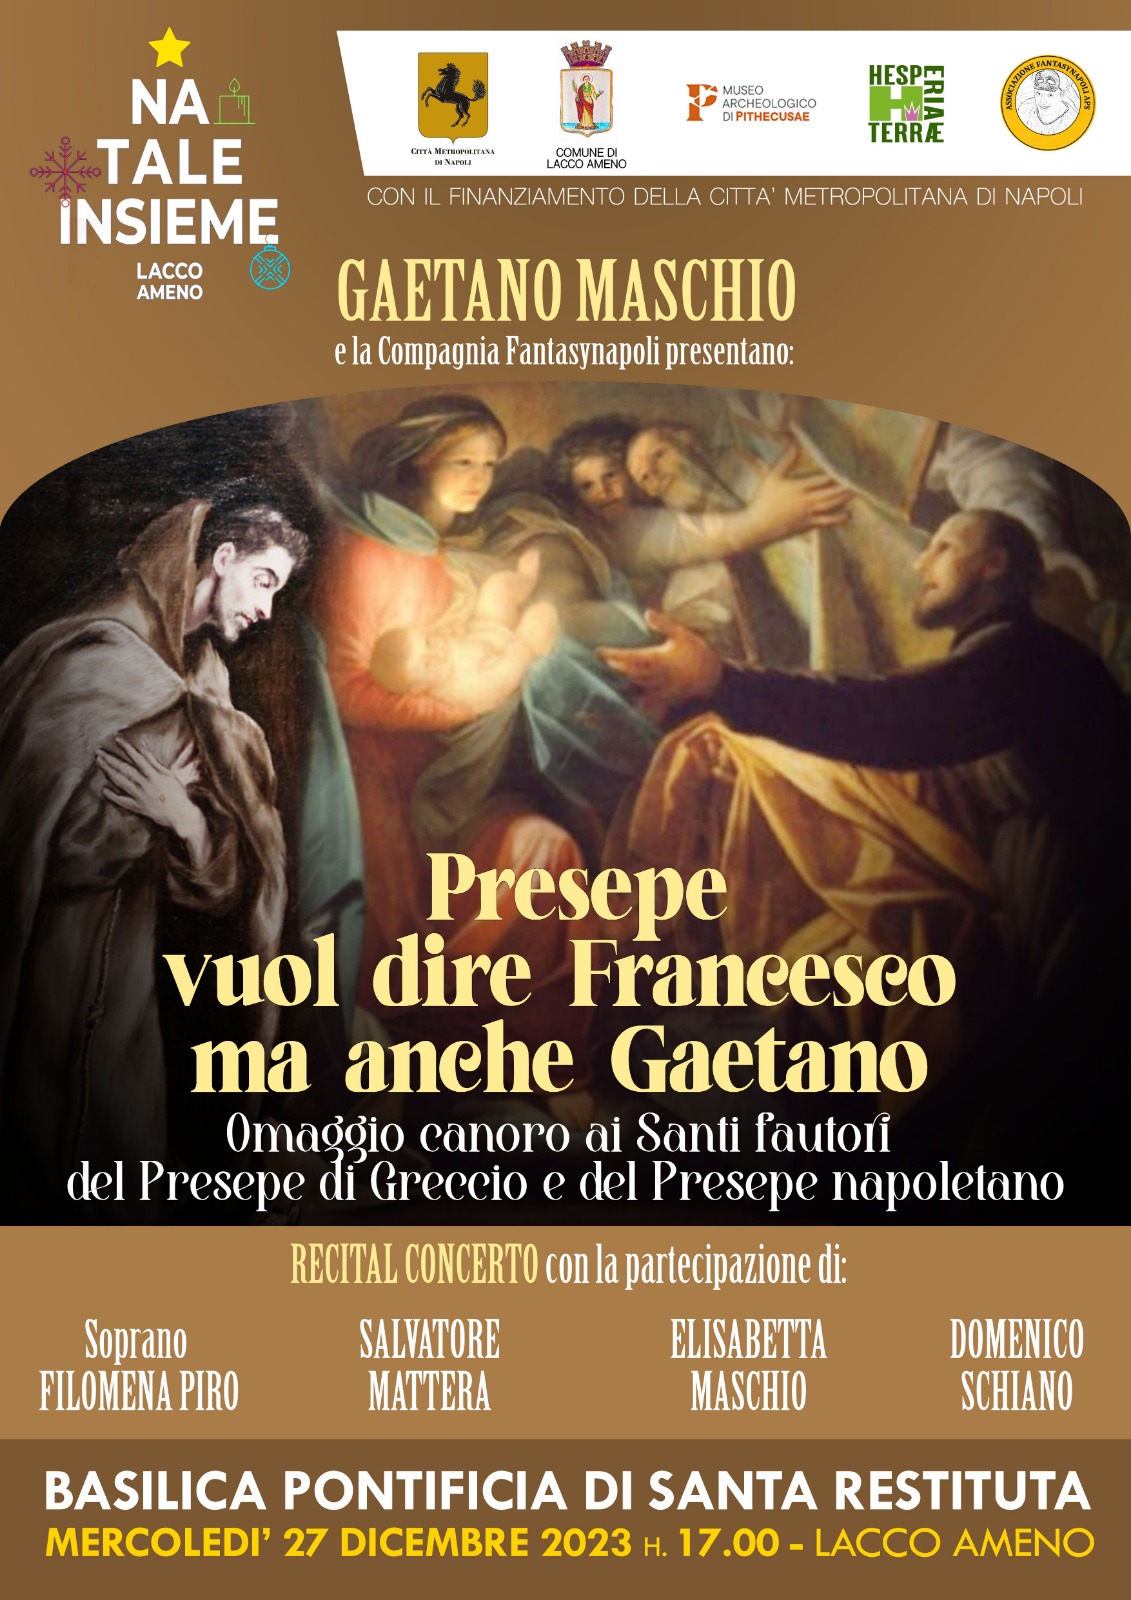 NATALE INSIEME A LACCO AMENO: Recital concerto “Presepe vuol dire Francesco ma anche Gaetano”